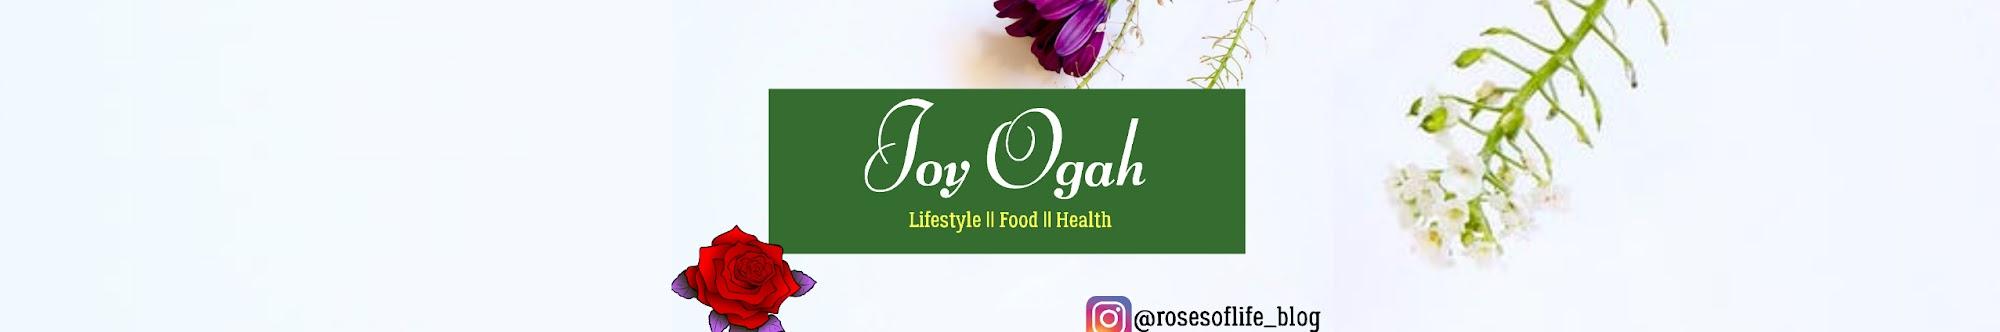 Joy Ogah